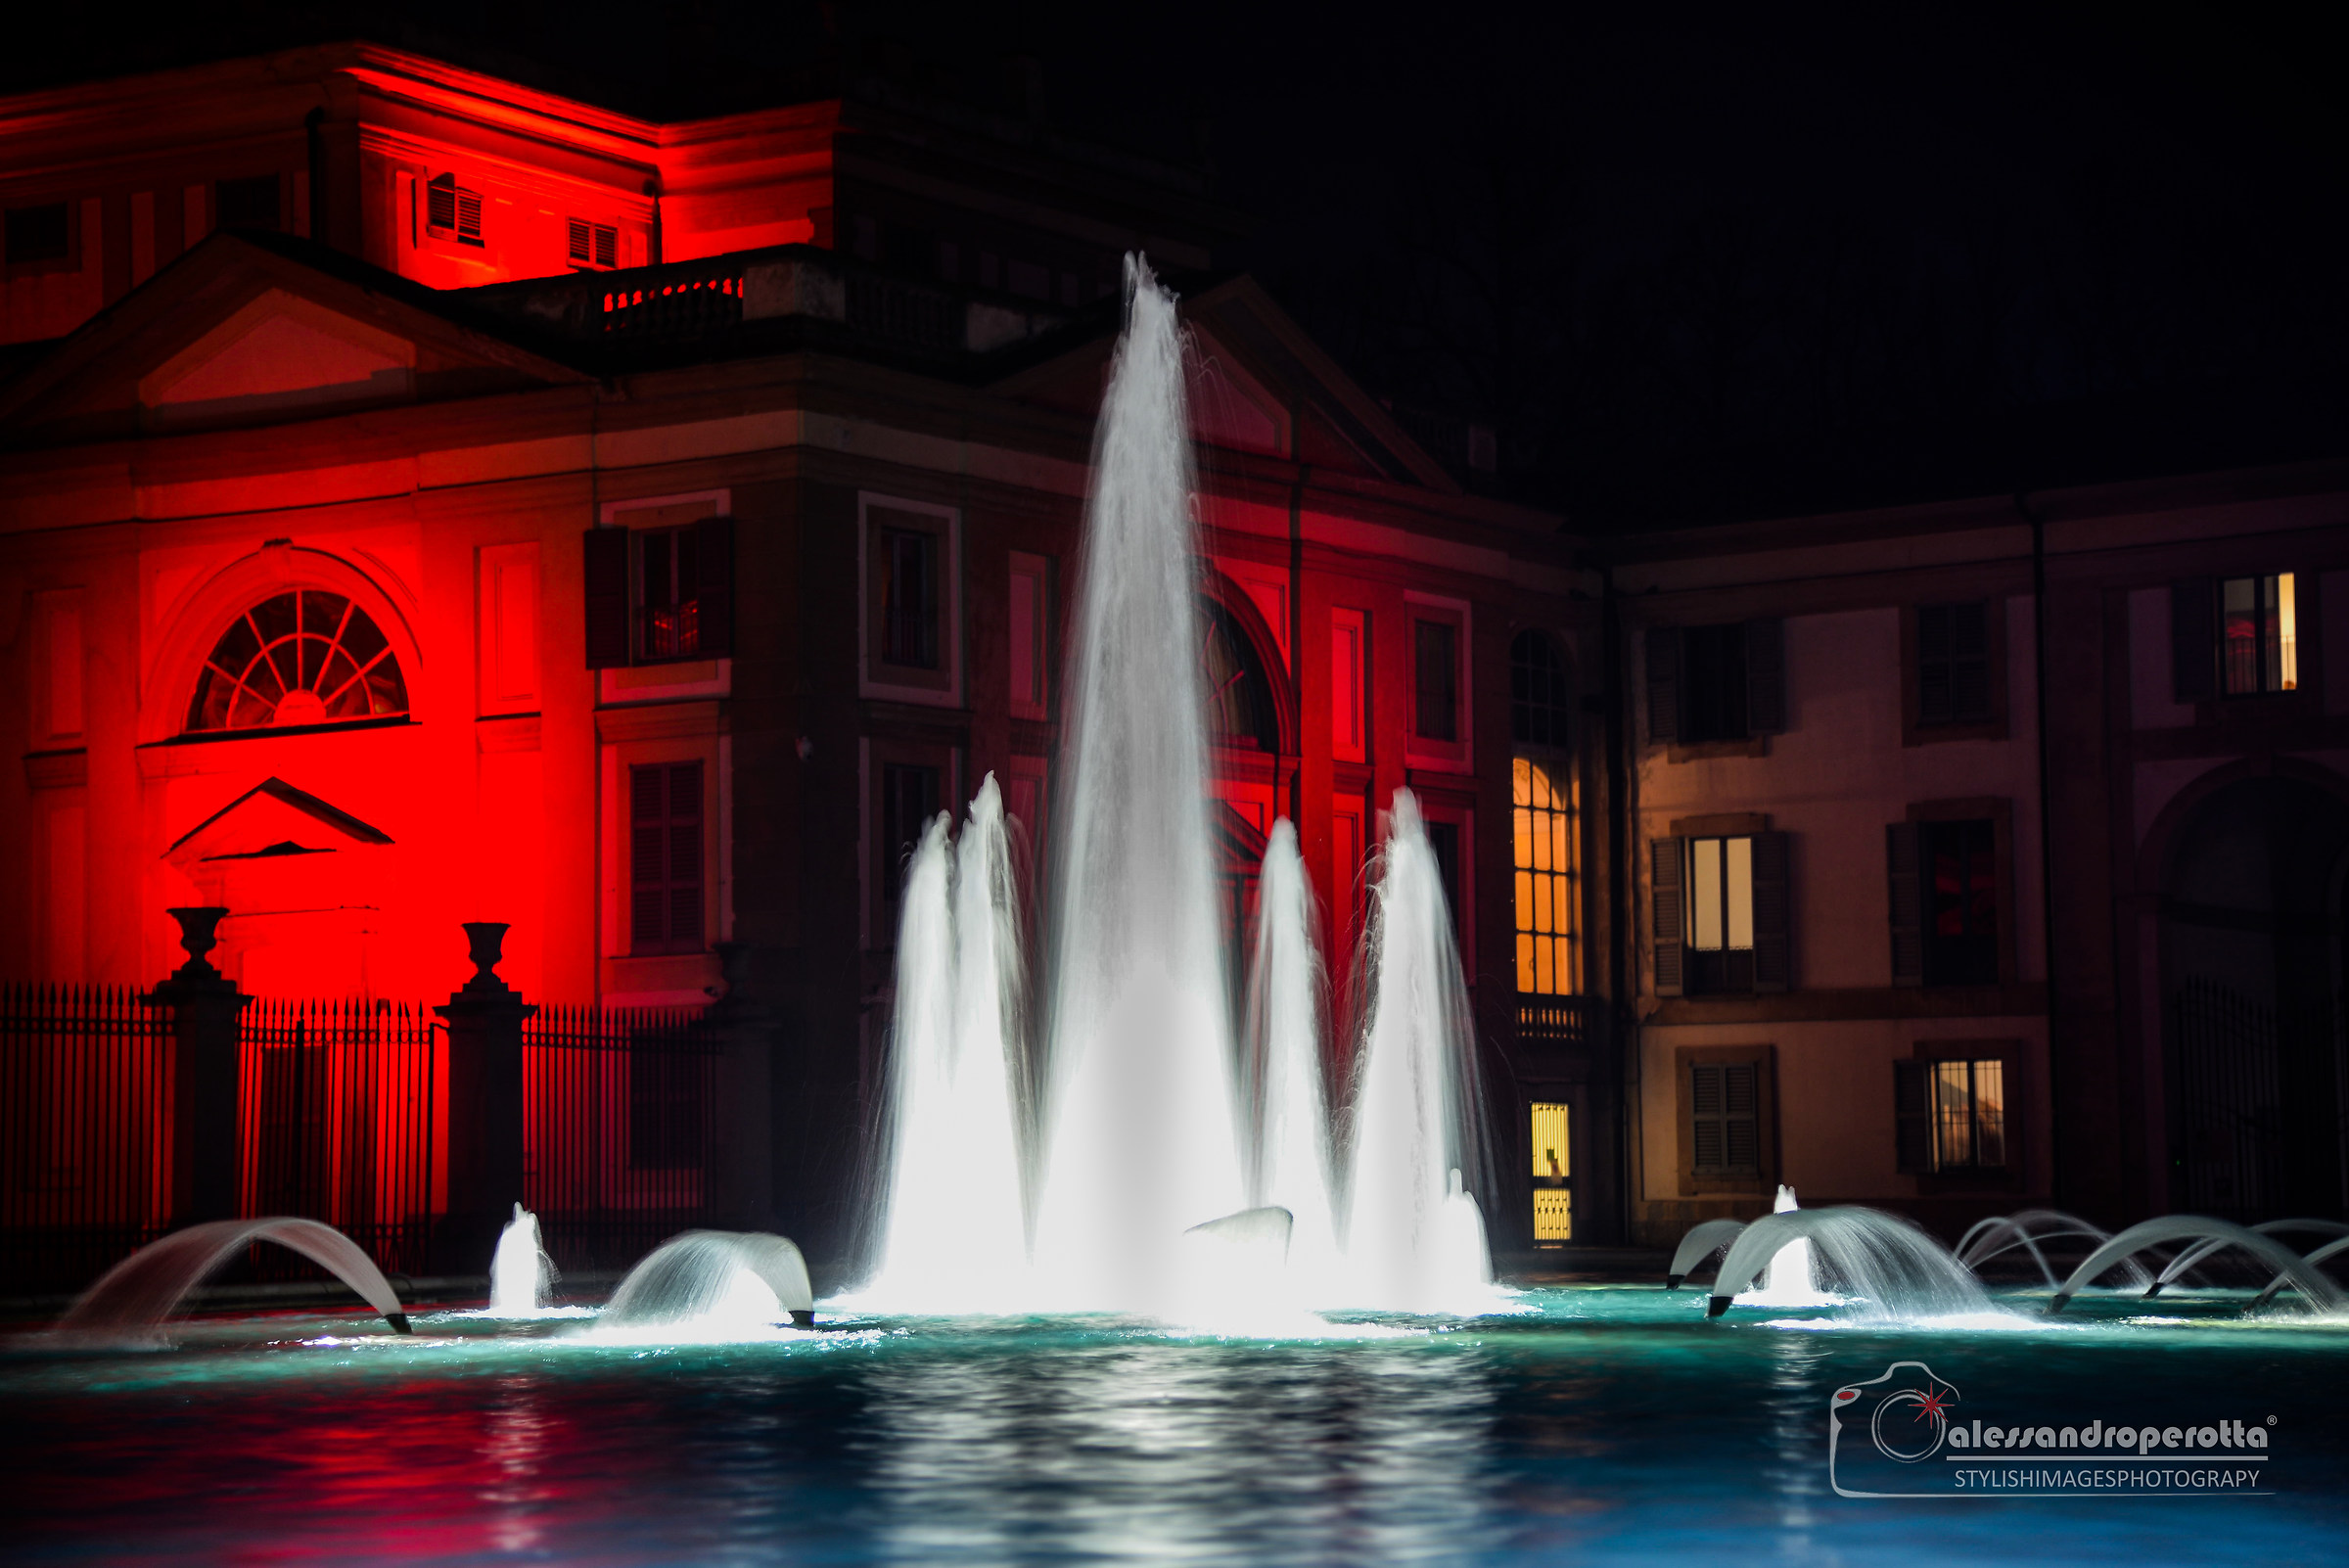 Villa reale di Monza by night...